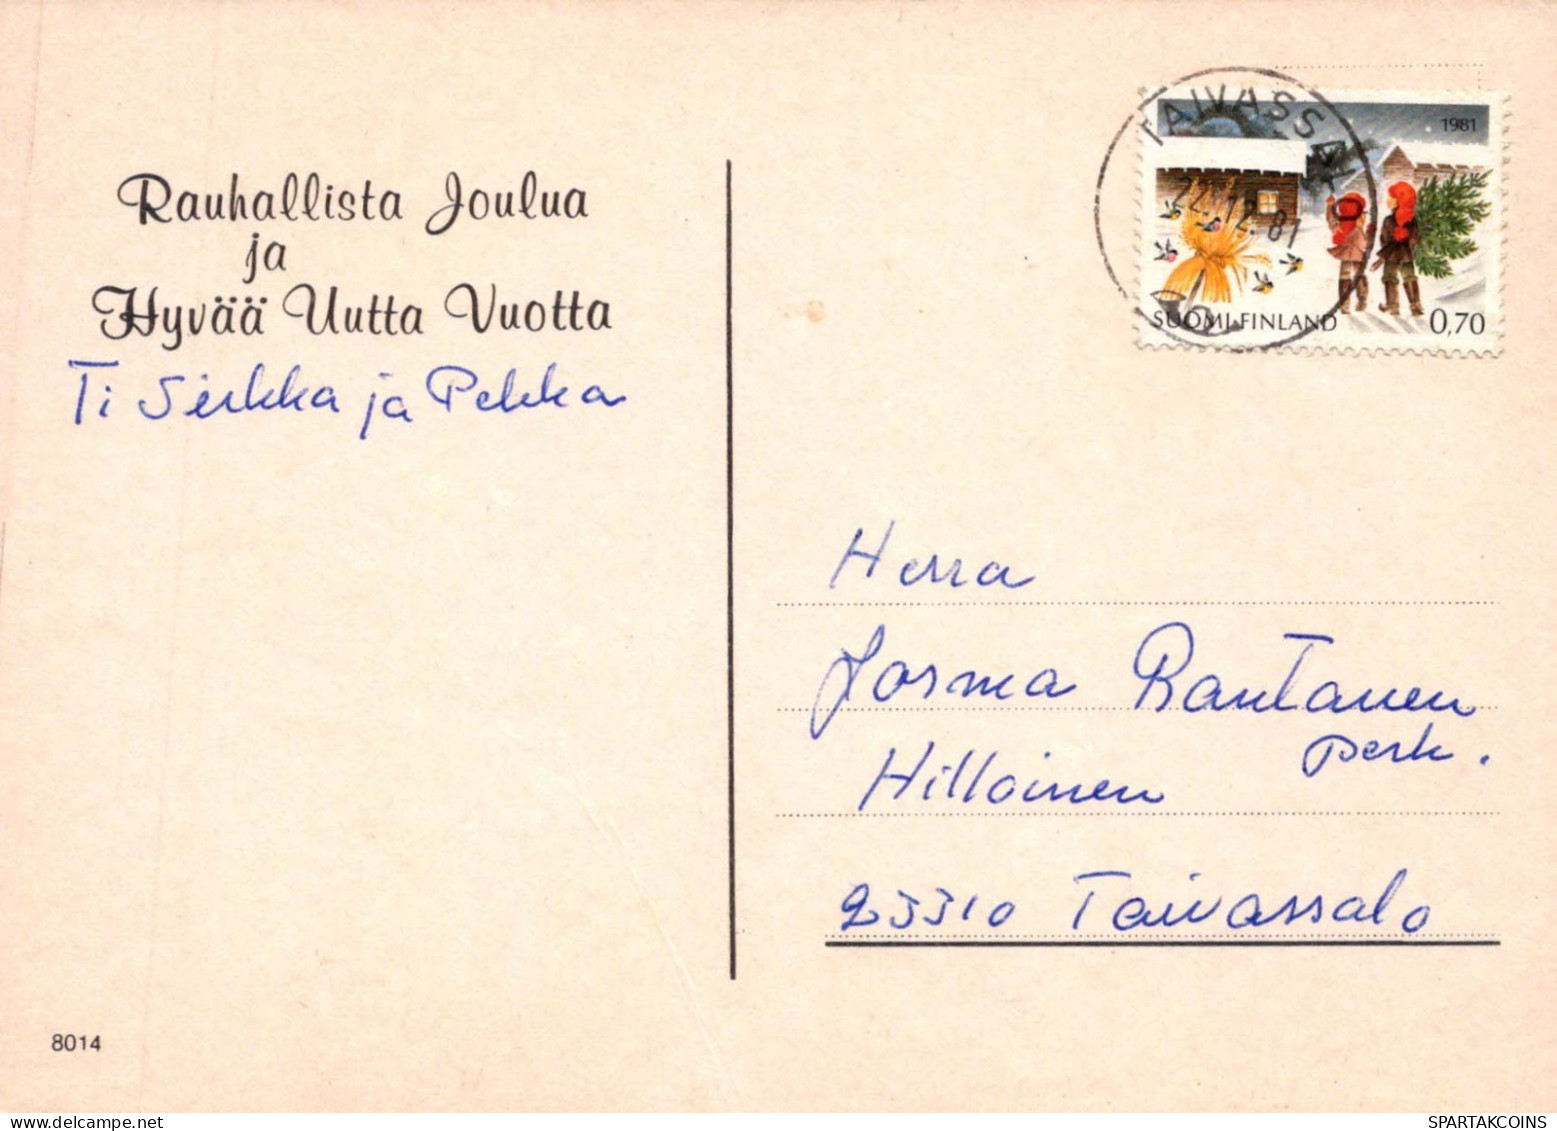 NIÑOS NIÑOS Escena S Paisajes Vintage Tarjeta Postal CPSM #PBT015.ES - Scenes & Landscapes